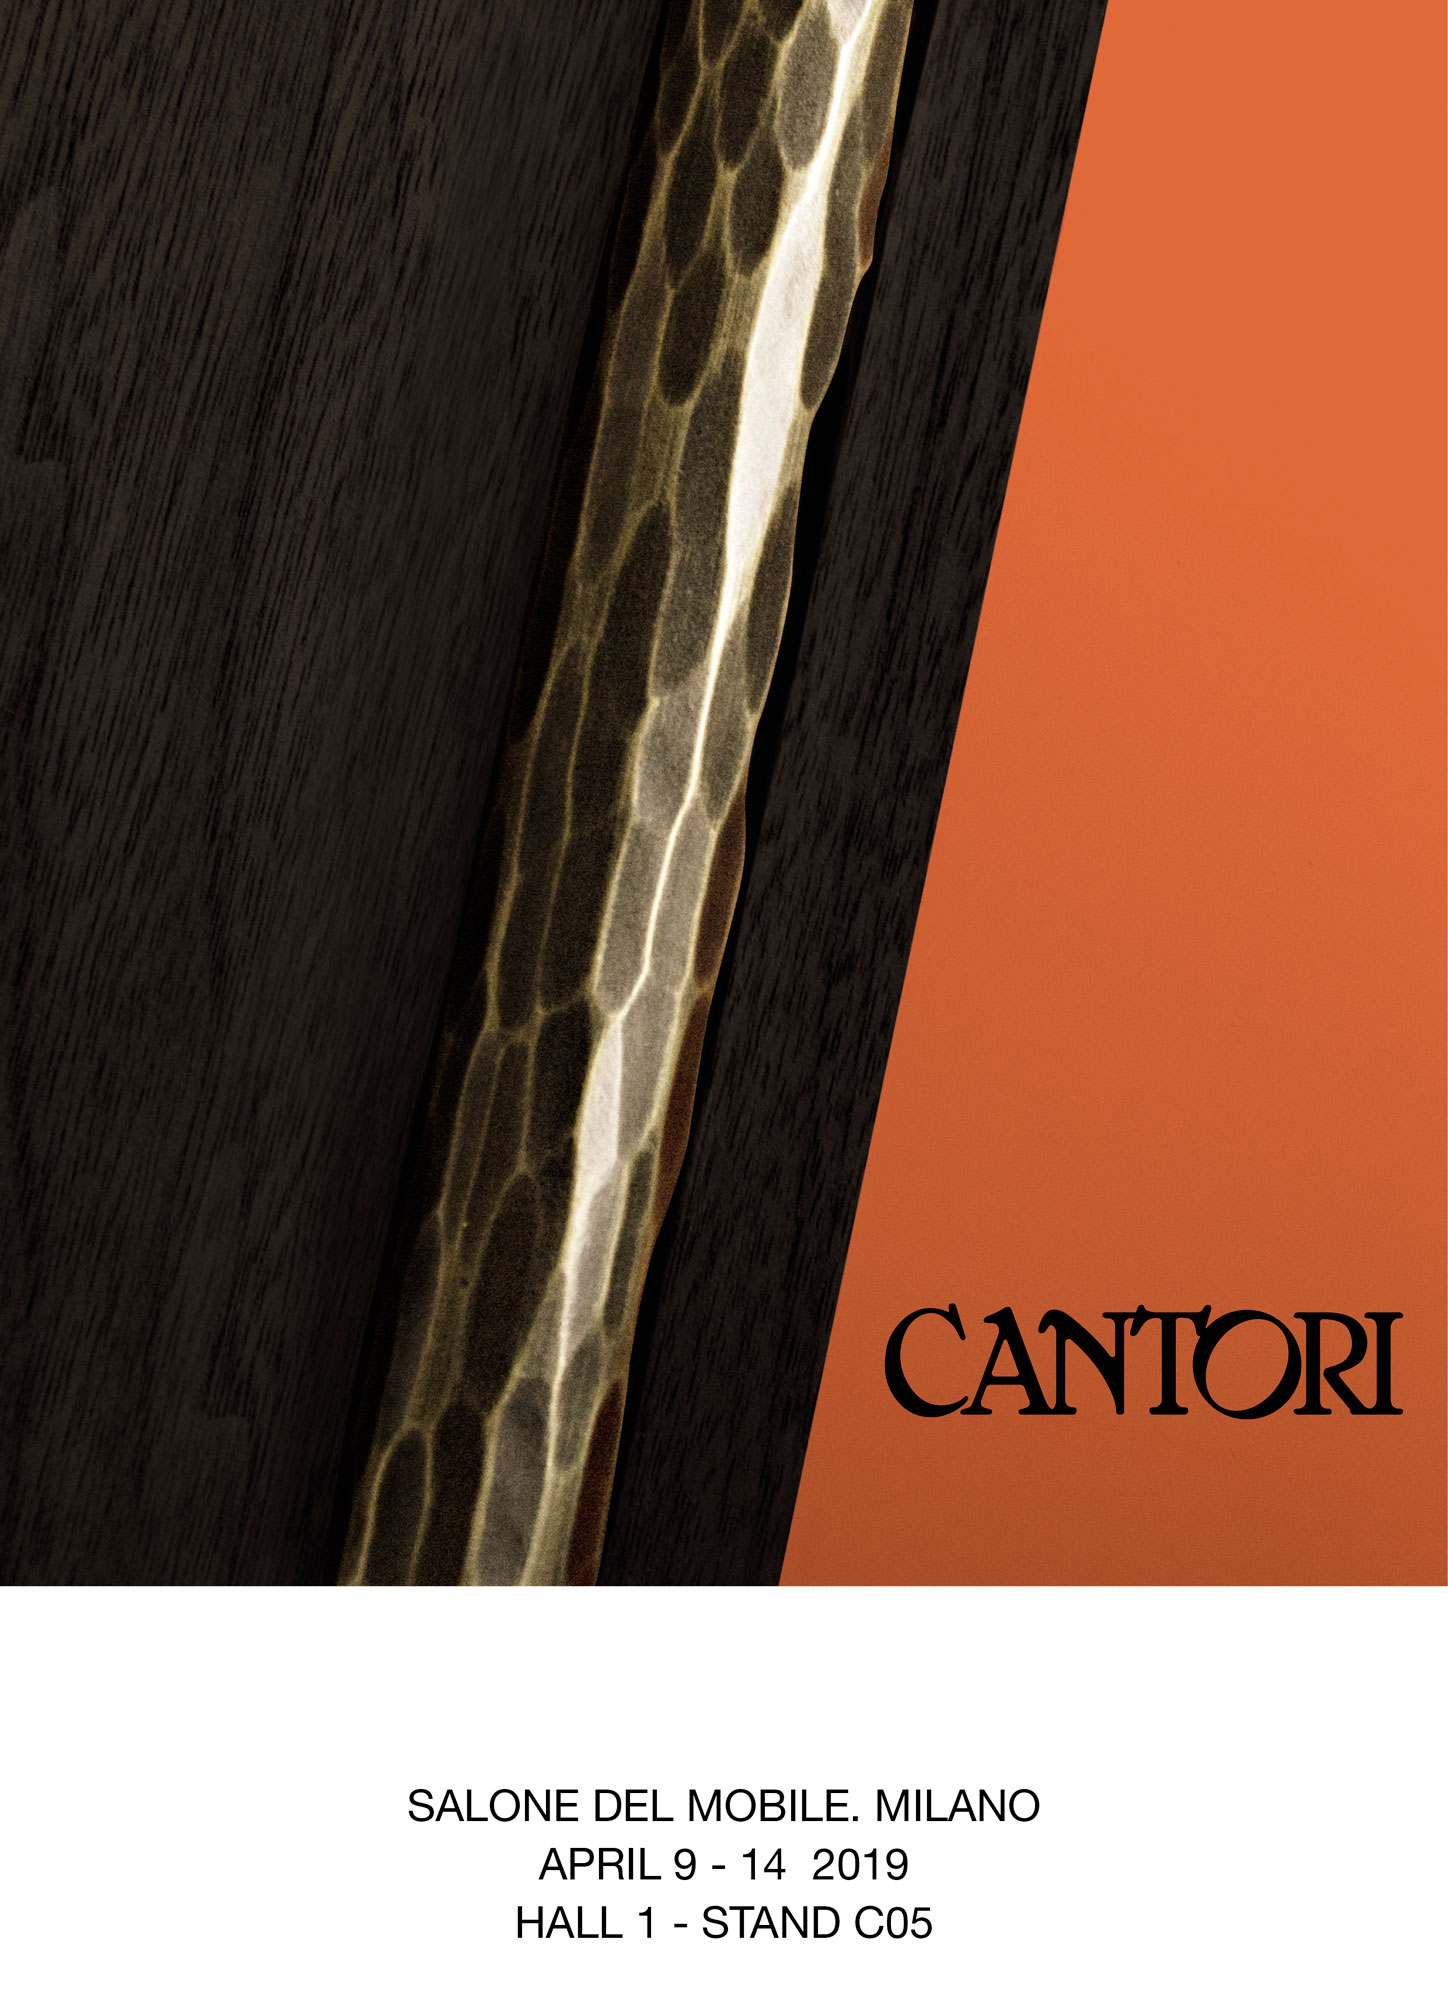 18/03/2019 Cantori al Salone del Mobile di Milano 2019 - Cantori